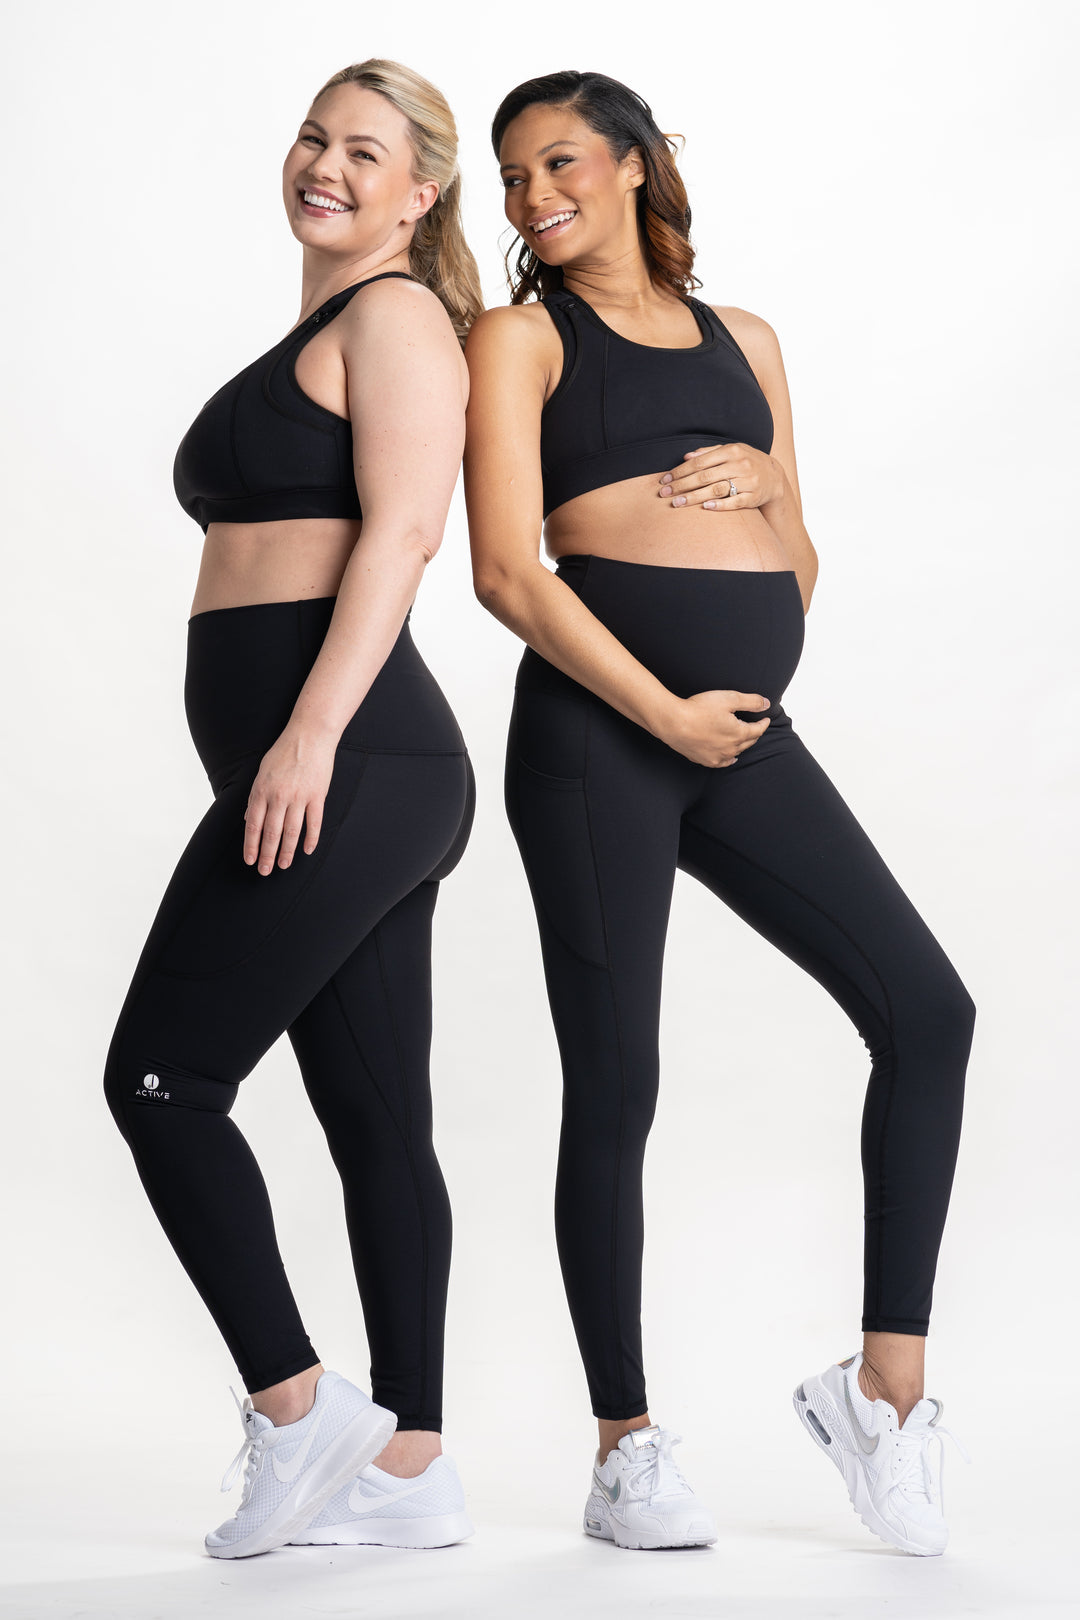 Basic maternity leggings, leggings, maternity wear, pregnancy